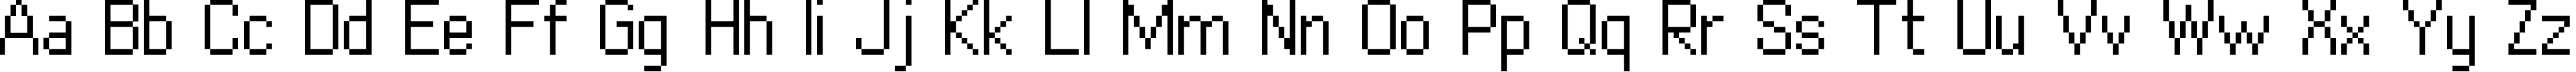 Пример написания английского алфавита шрифтом copy 10_55